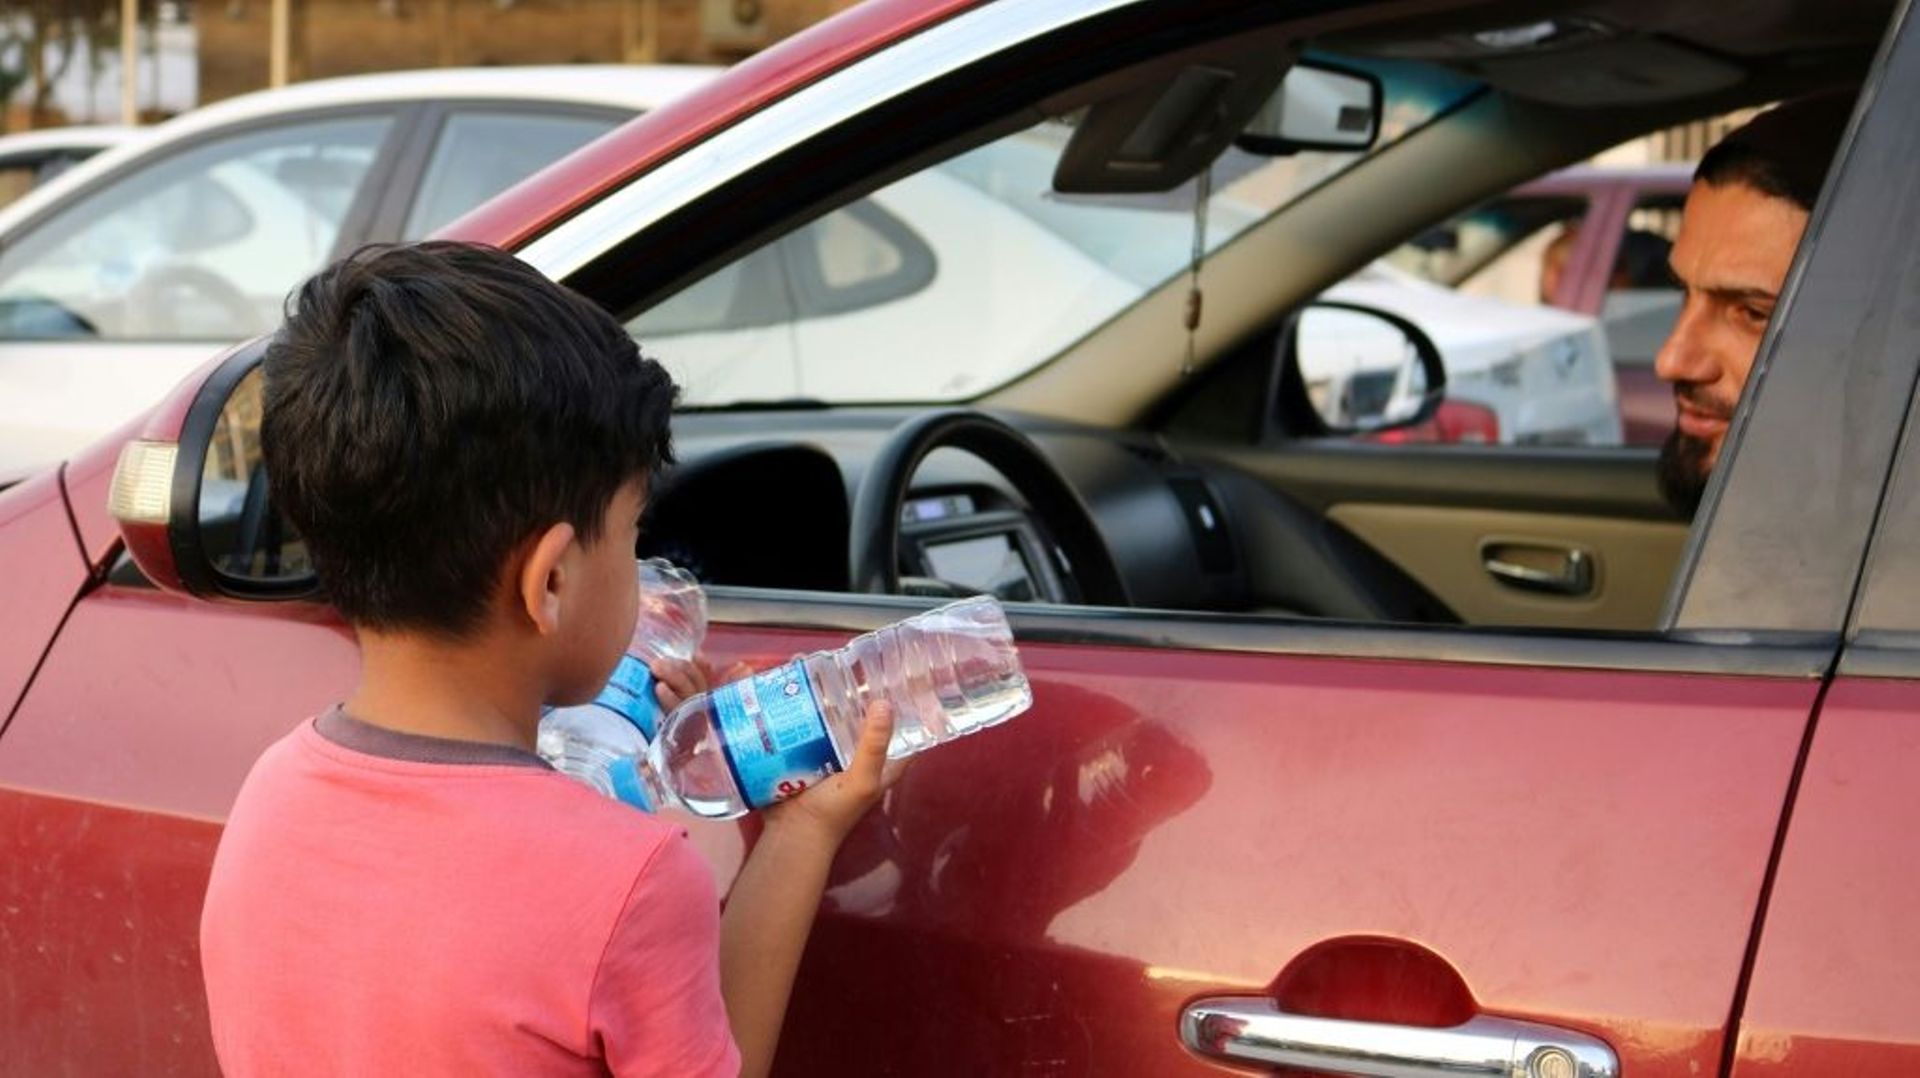 Un garçon irakien essaye de vendre des bouteilles d'eau dans une rue de Mossoul, où des enfants orphelins errent pour mendier ou vendre des objets futiles pour survivre, un an après la reprise par l'armée irakienne de la ville aux jihadistes, le 7 juillet